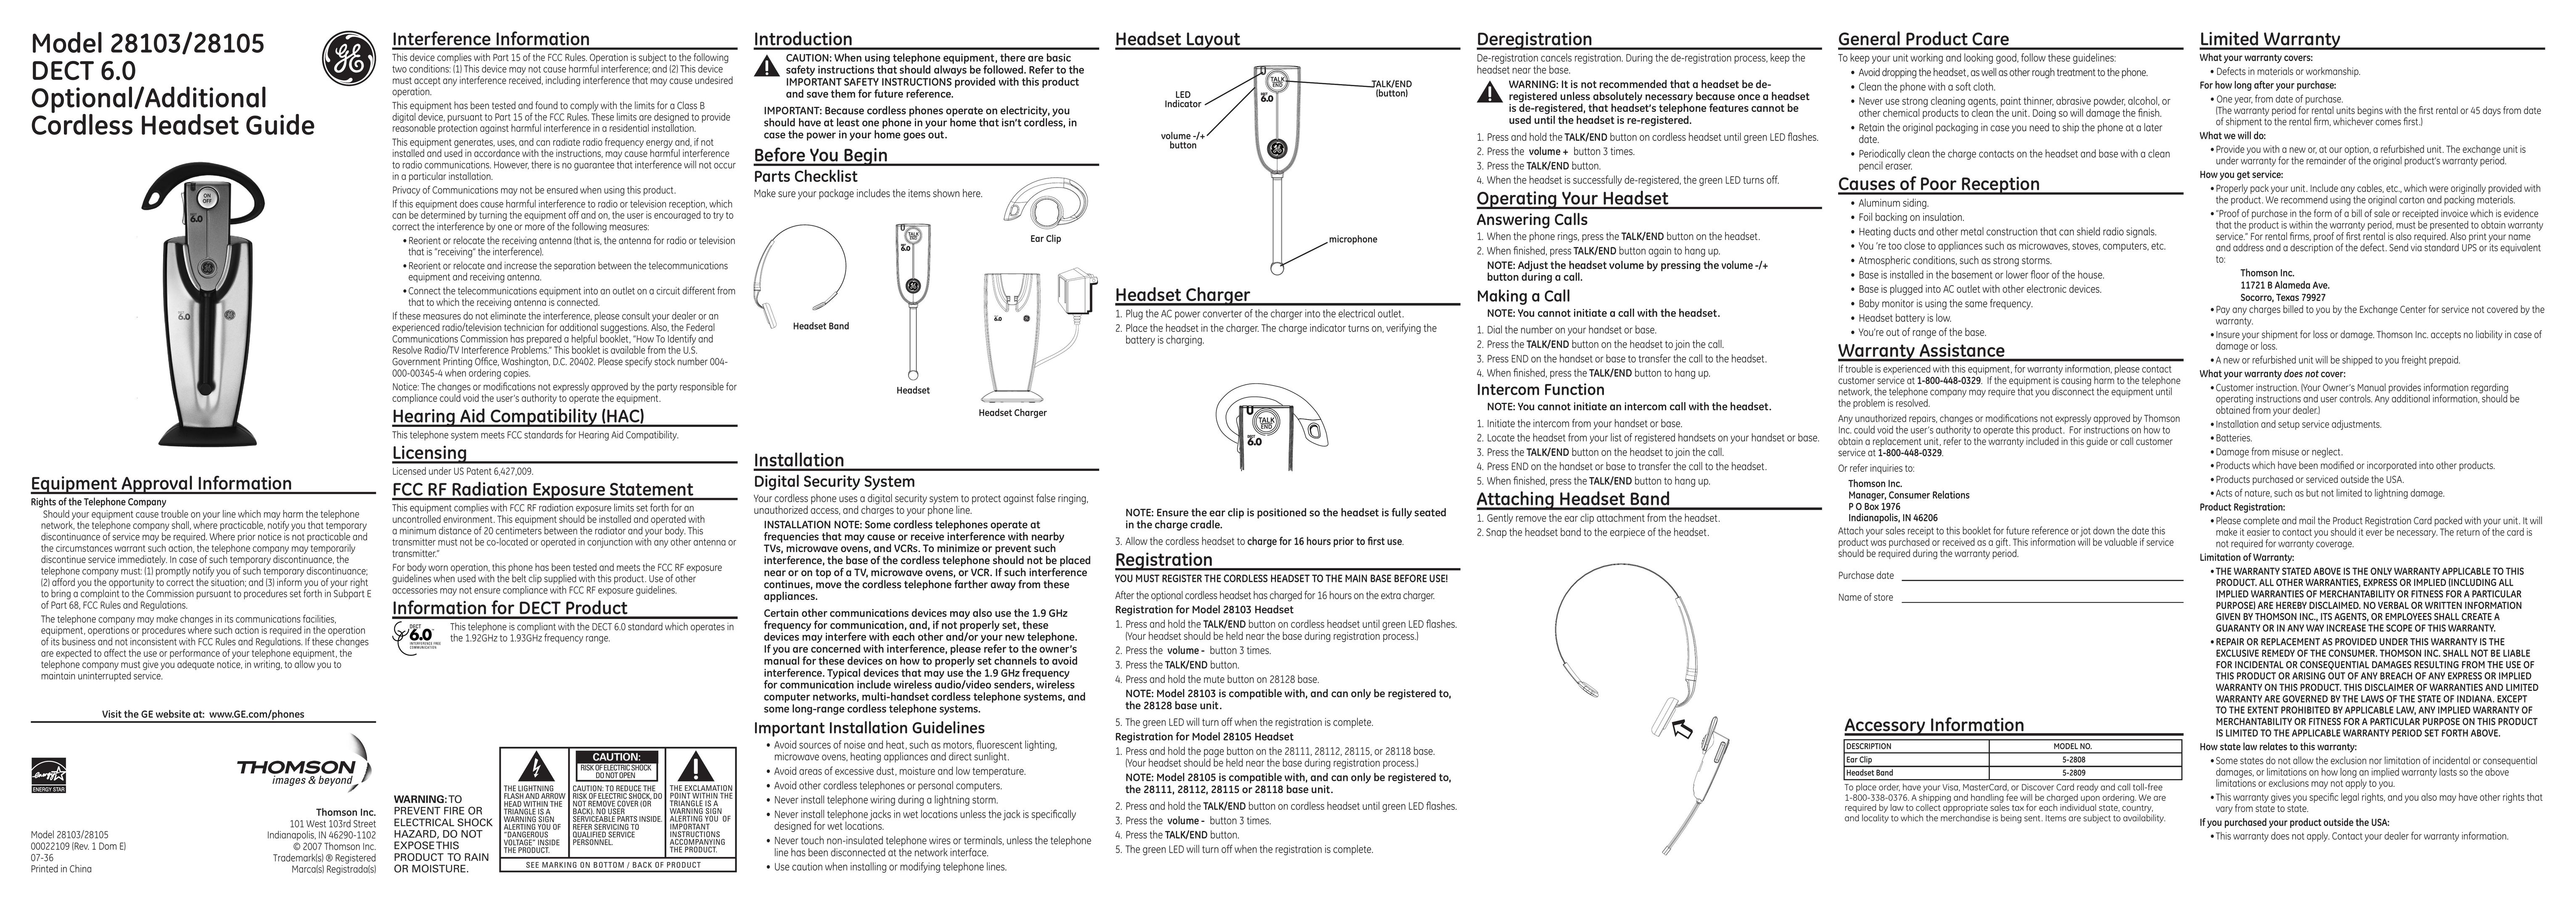 GE 28105 Headphones User Manual